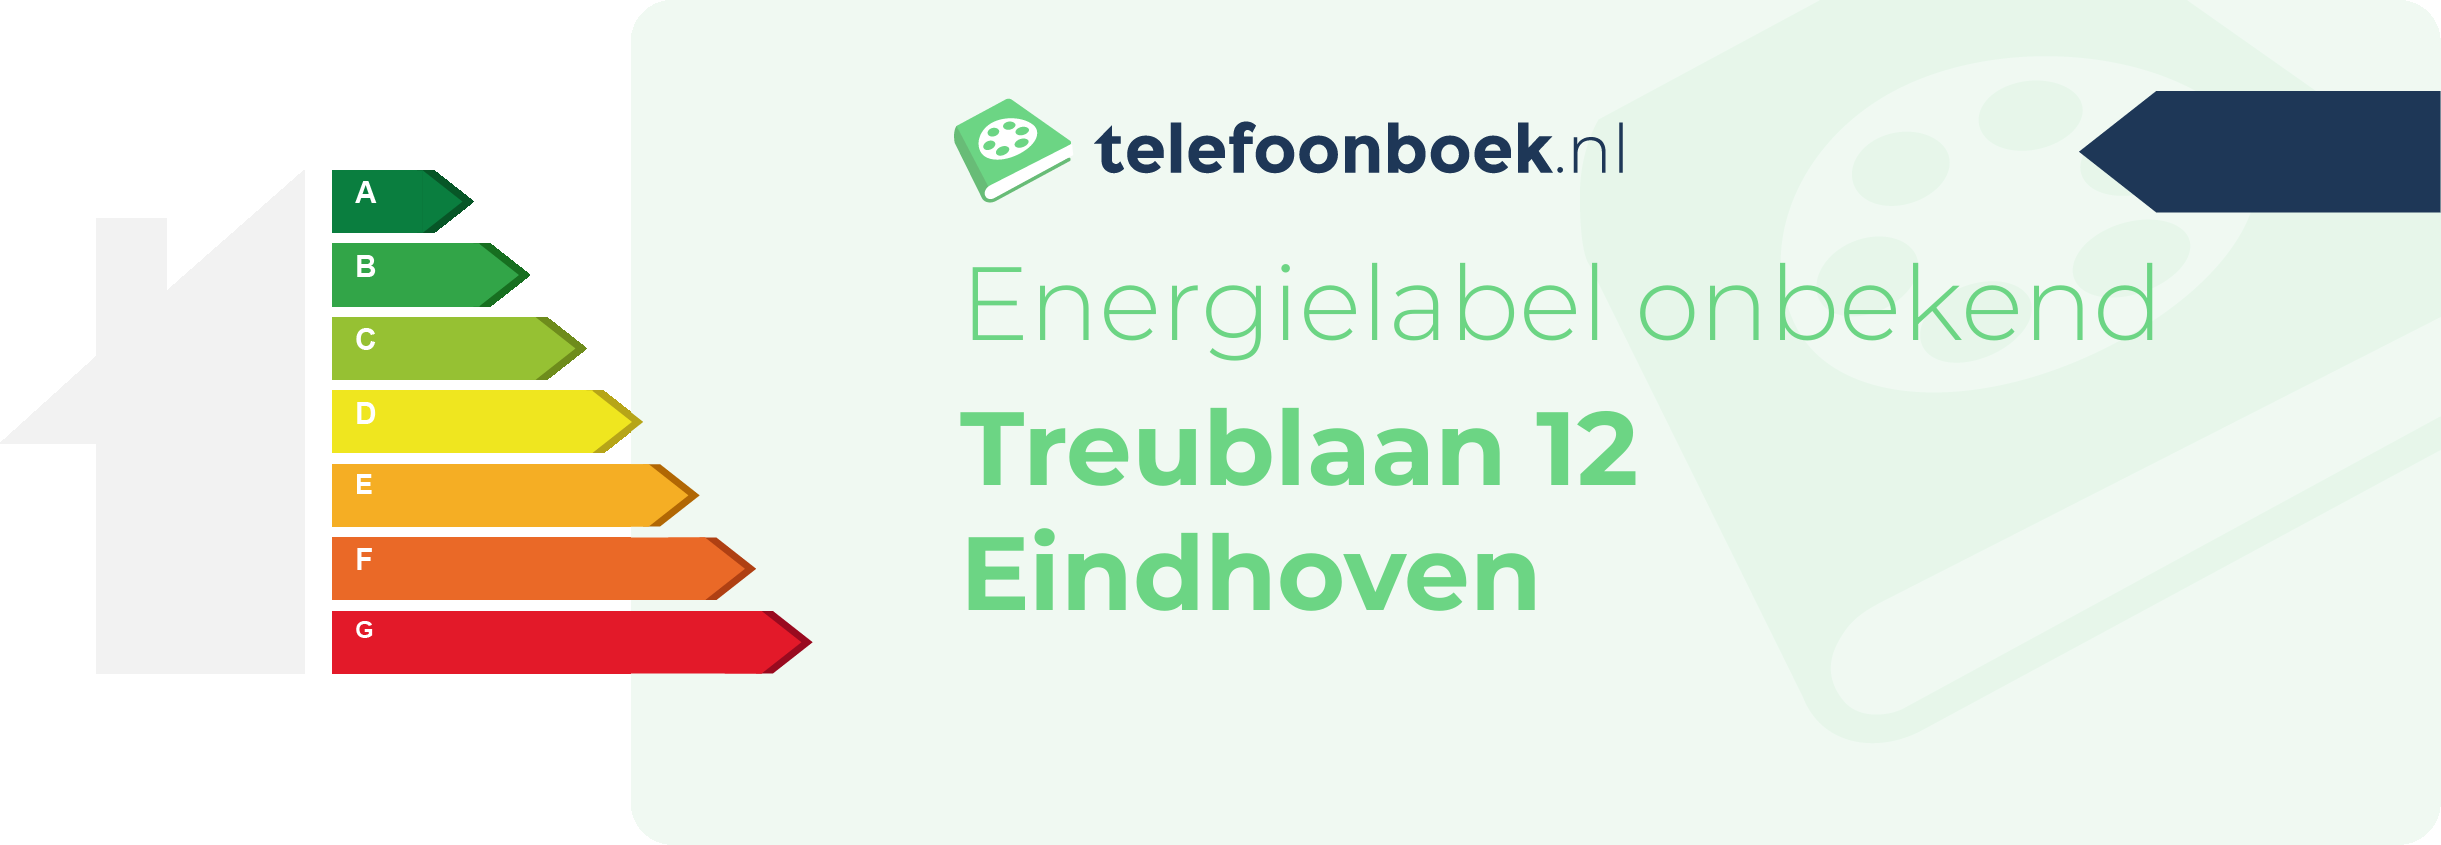 Energielabel Treublaan 12 Eindhoven